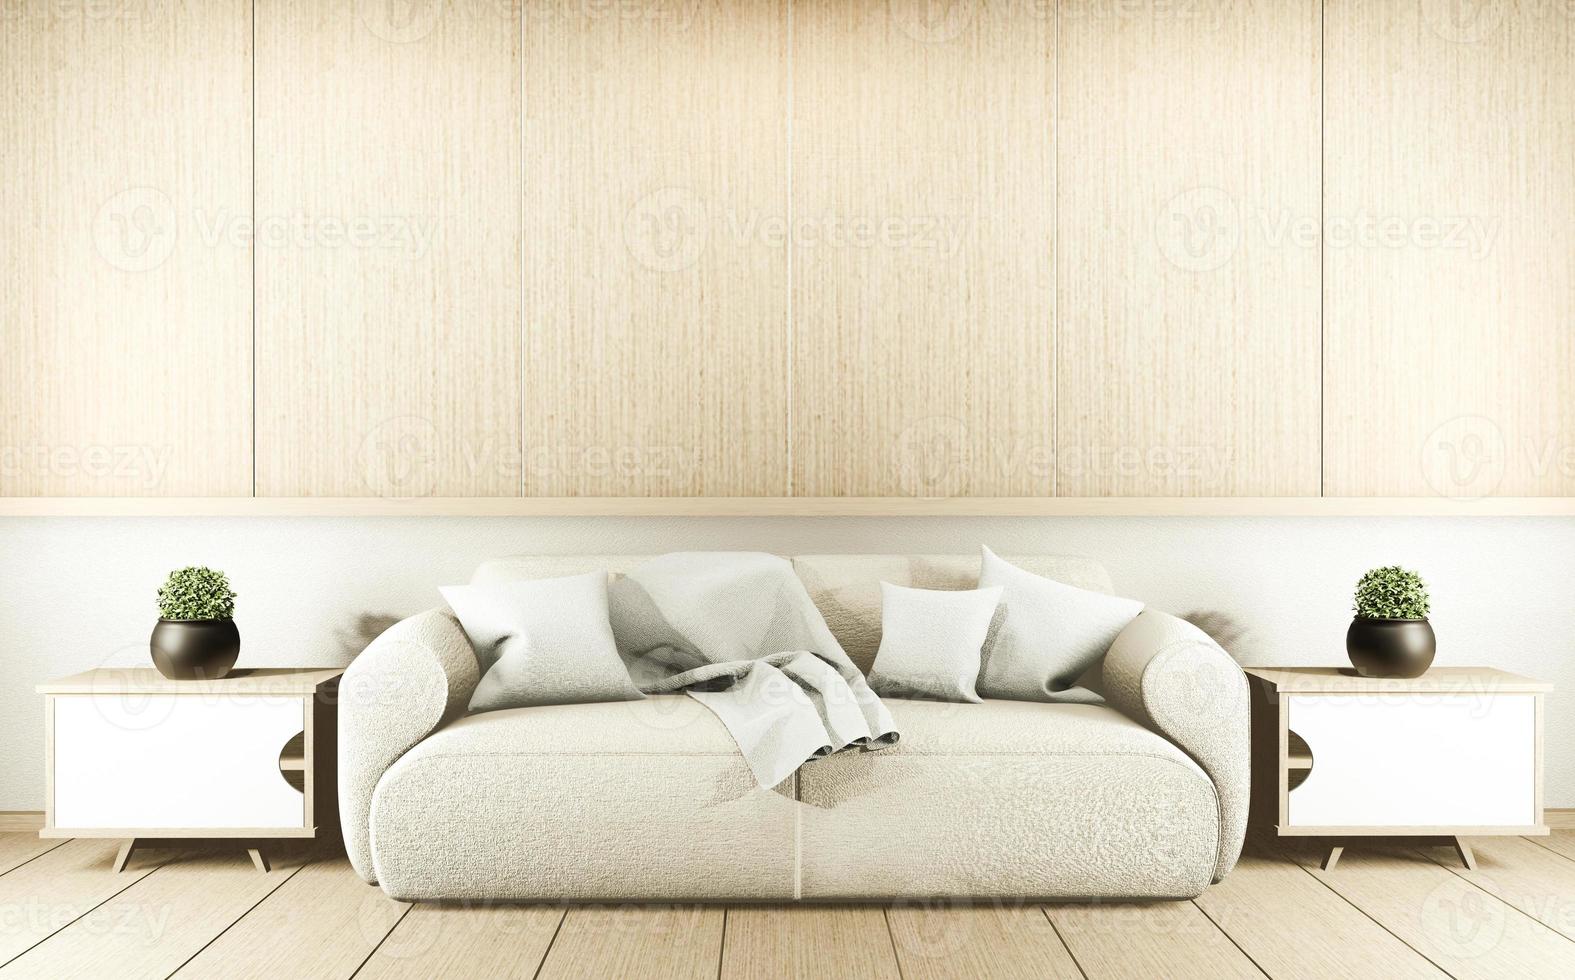 modern zen vardagsrum interiör, vit soffa och inredning japansk stil på rum vit vägg bakgrund. 3d-rendering foto